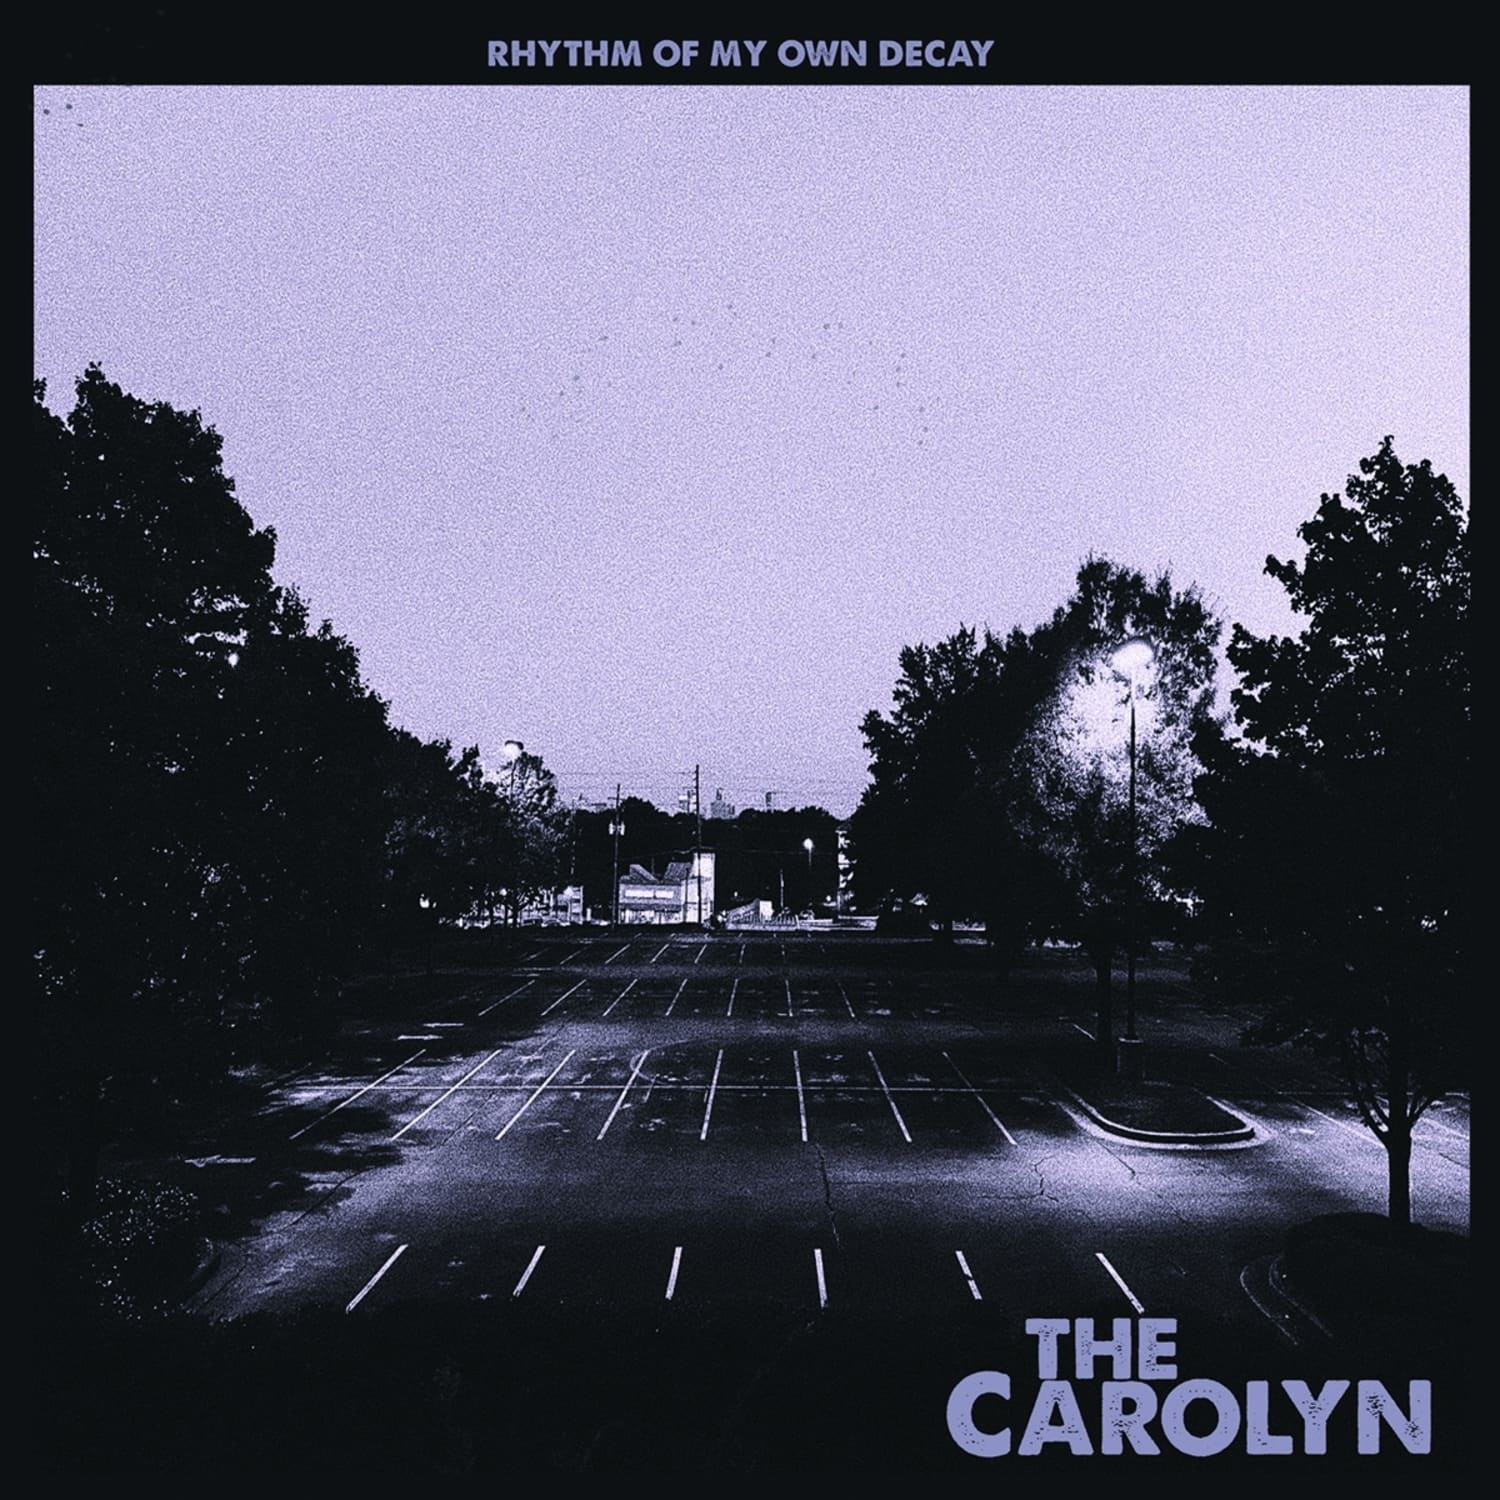 The Carolyn - RHYTHM OF MY OWN DECAY 